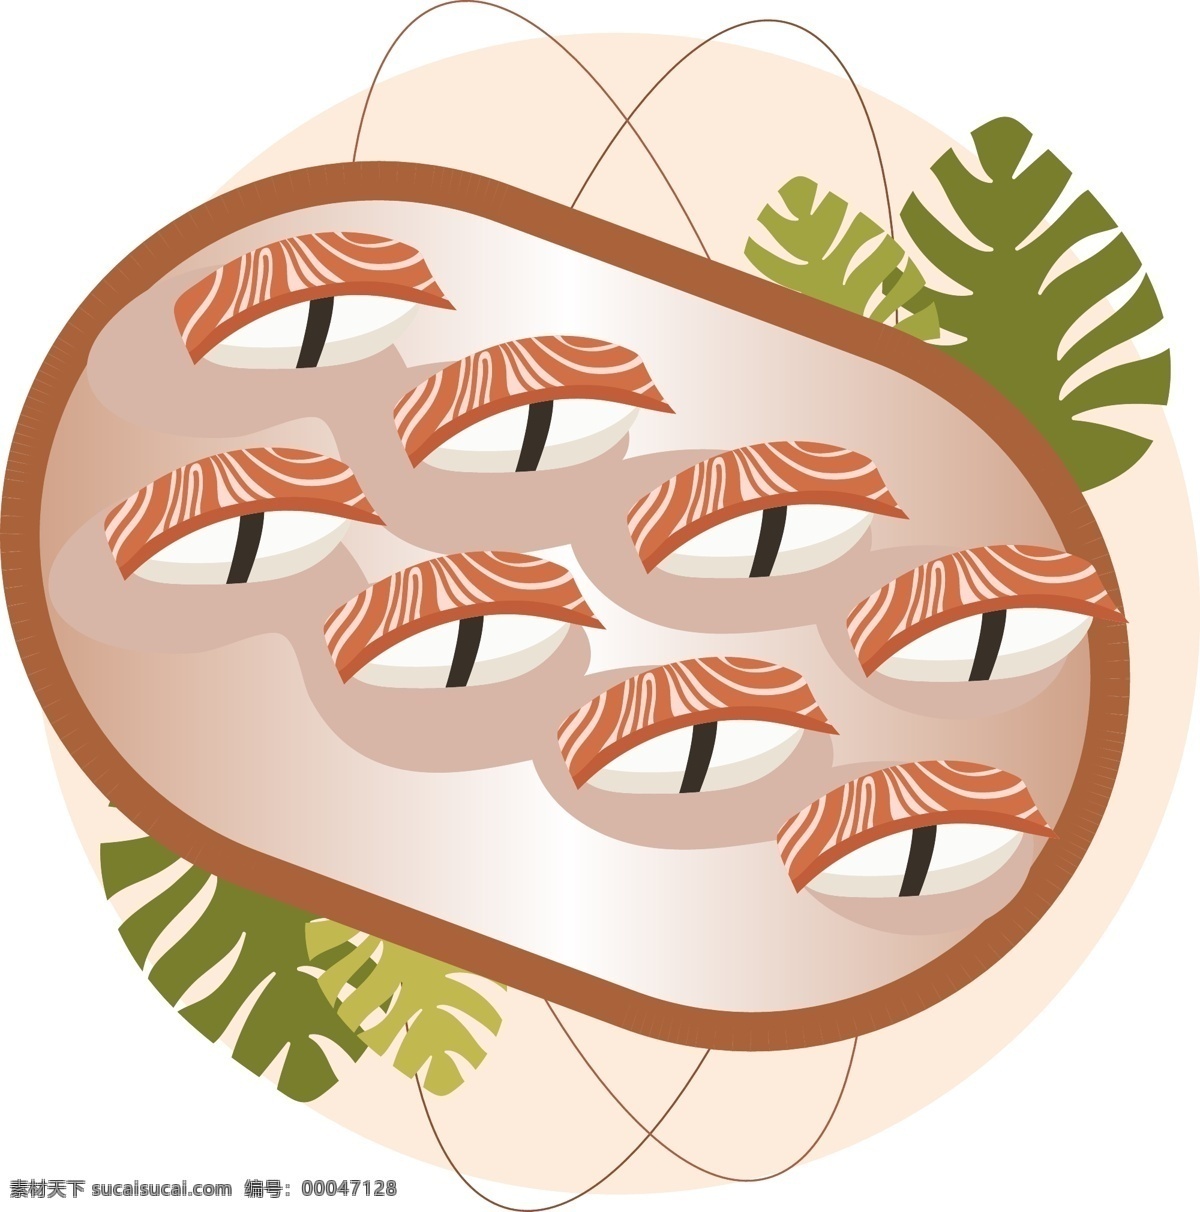 盘子 三文鱼 紫菜 日式 寿司 元素 米饭 植物 叶子 创意 卡通 可爱 三文鱼寿司 简约 食物 美味 美食 诱人 食材